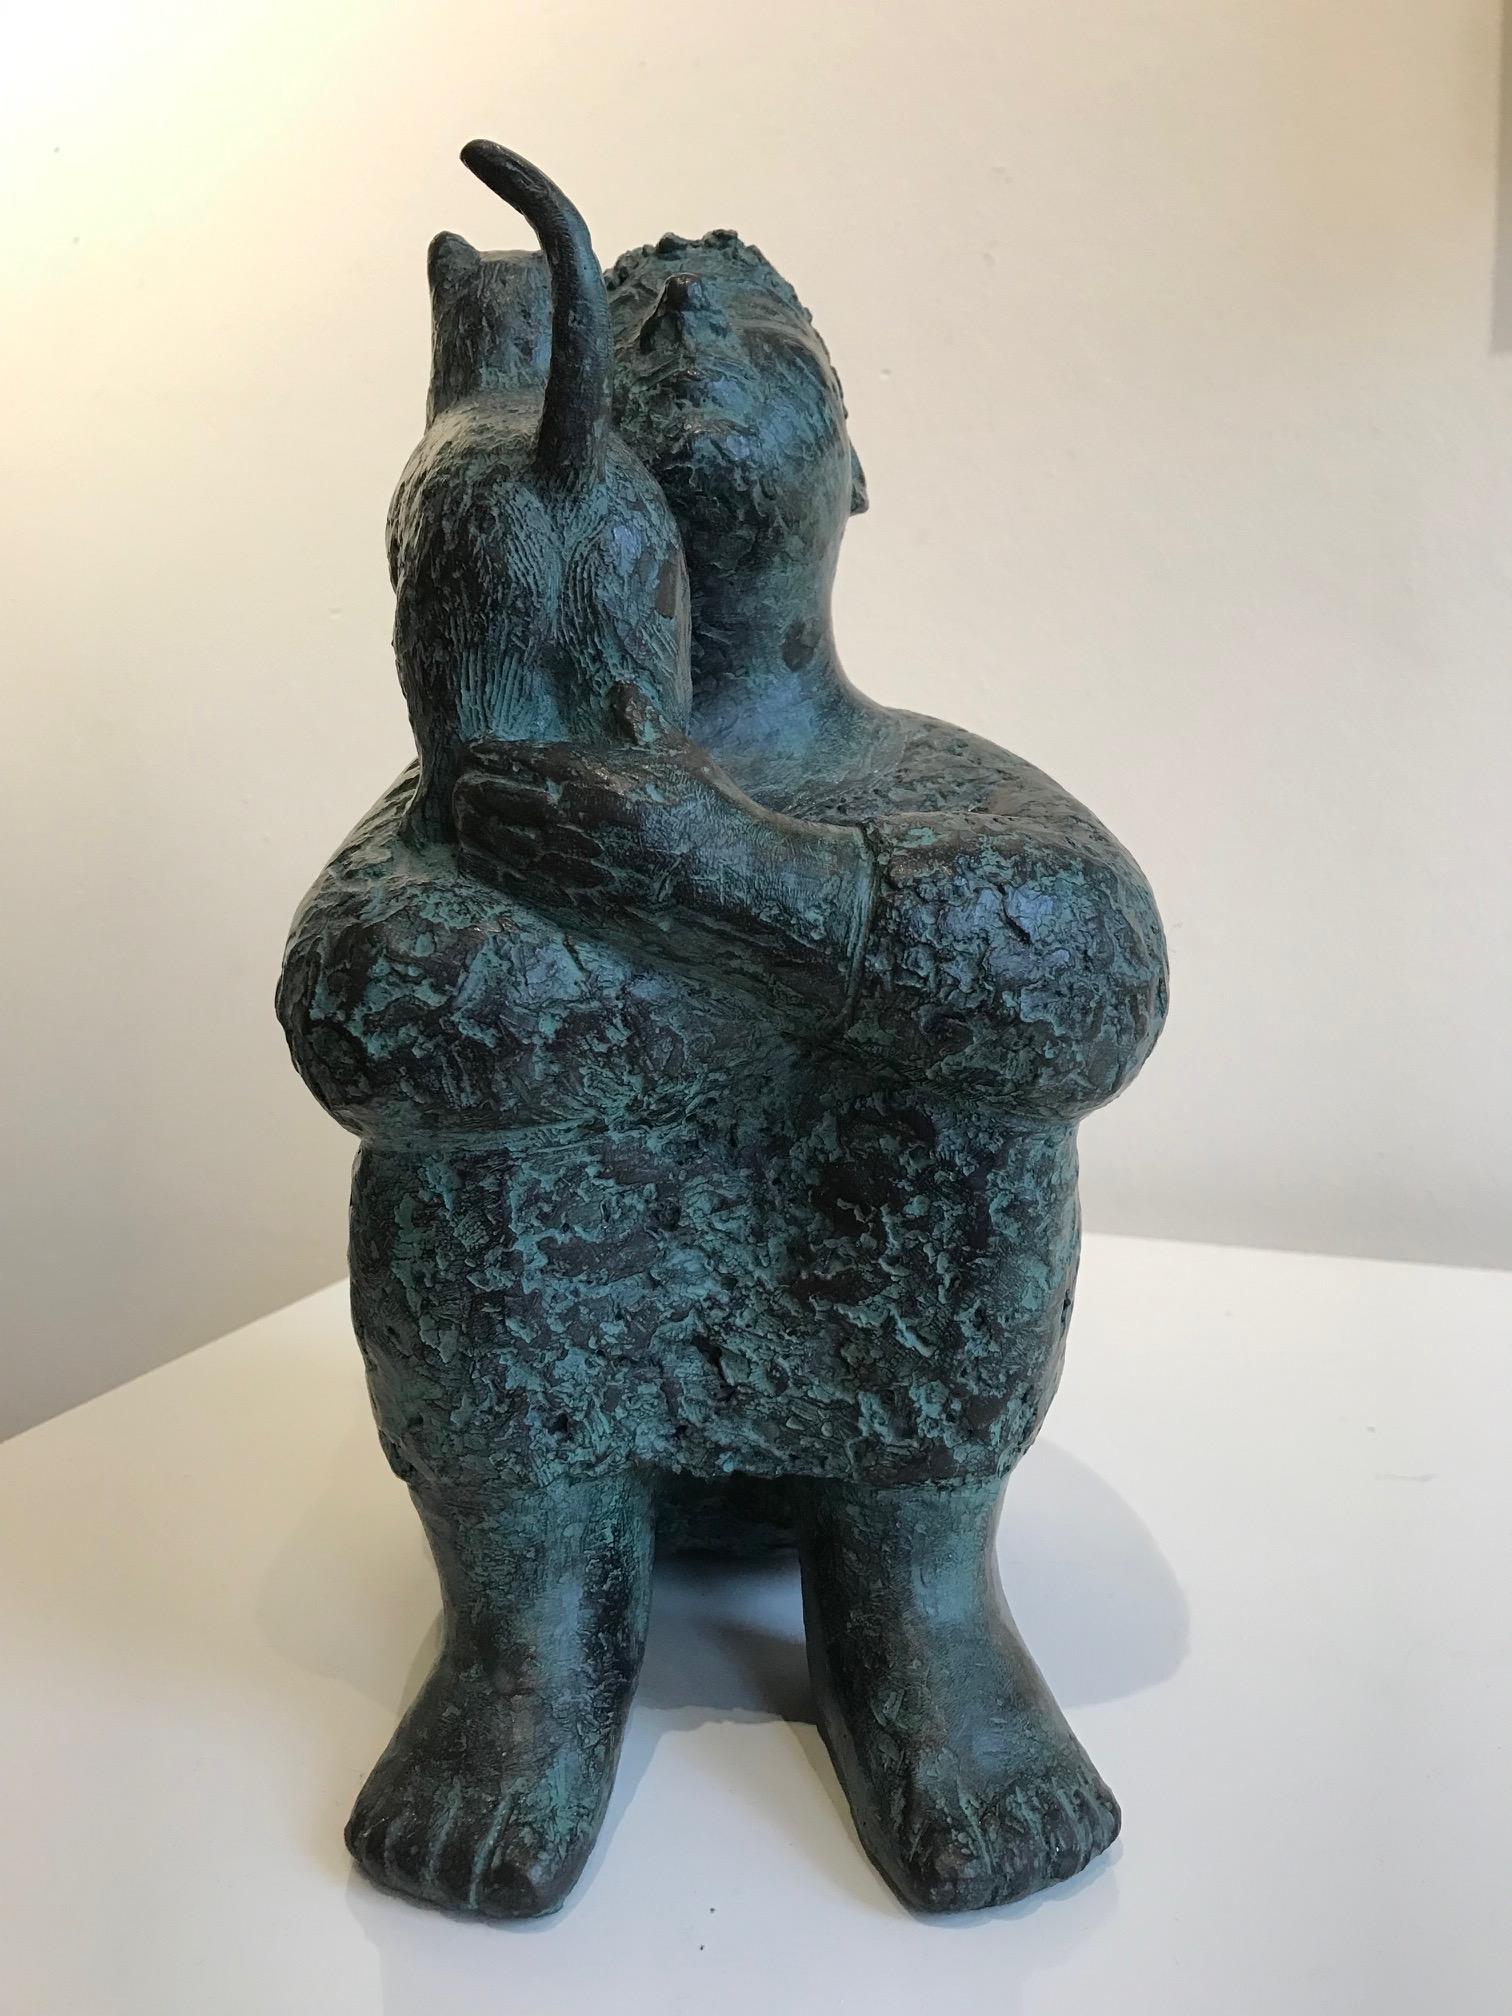 Les sculptures en bronze de Karin Beek (1948) se caractérisent par un style sympathique, rond et en même temps monumental. Ils respirent l'atmosphère de la vie quotidienne. Beek souhaite que ses sculptures soient accessibles, qu'elles touchent le